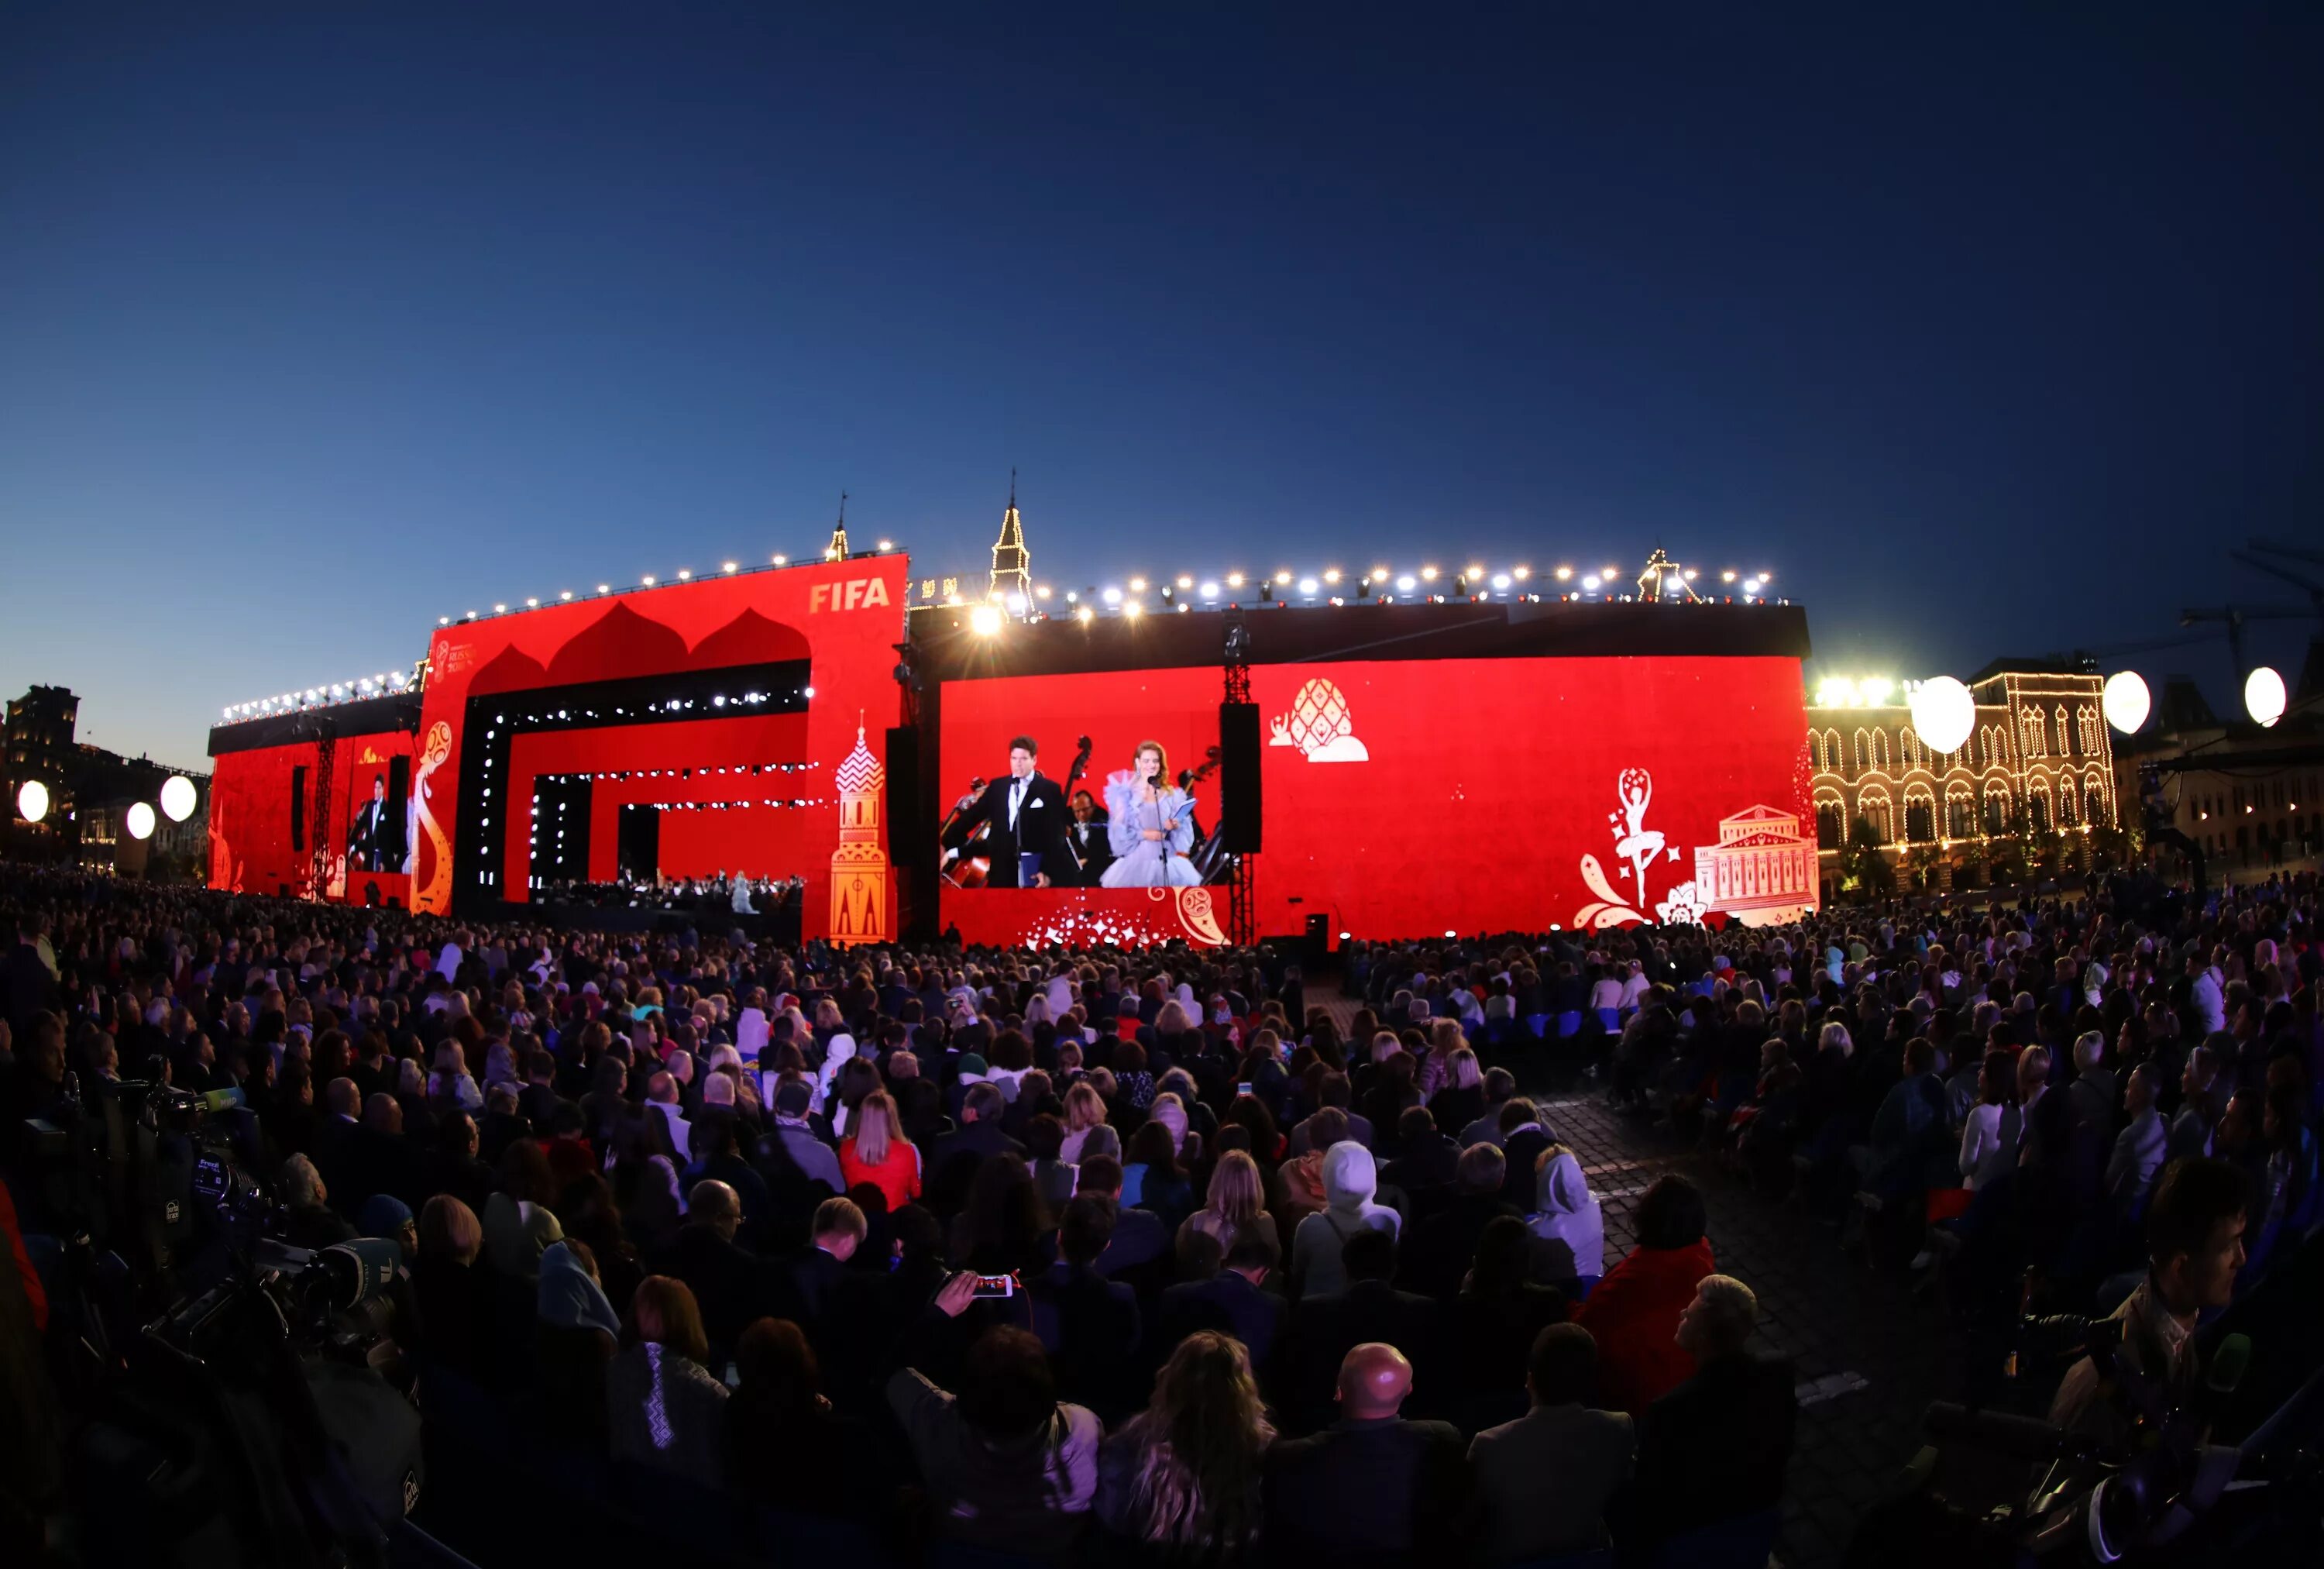 Сцена на красной площади. Концерт на красной площади. Концертная сцена на площади. Красный концерт.